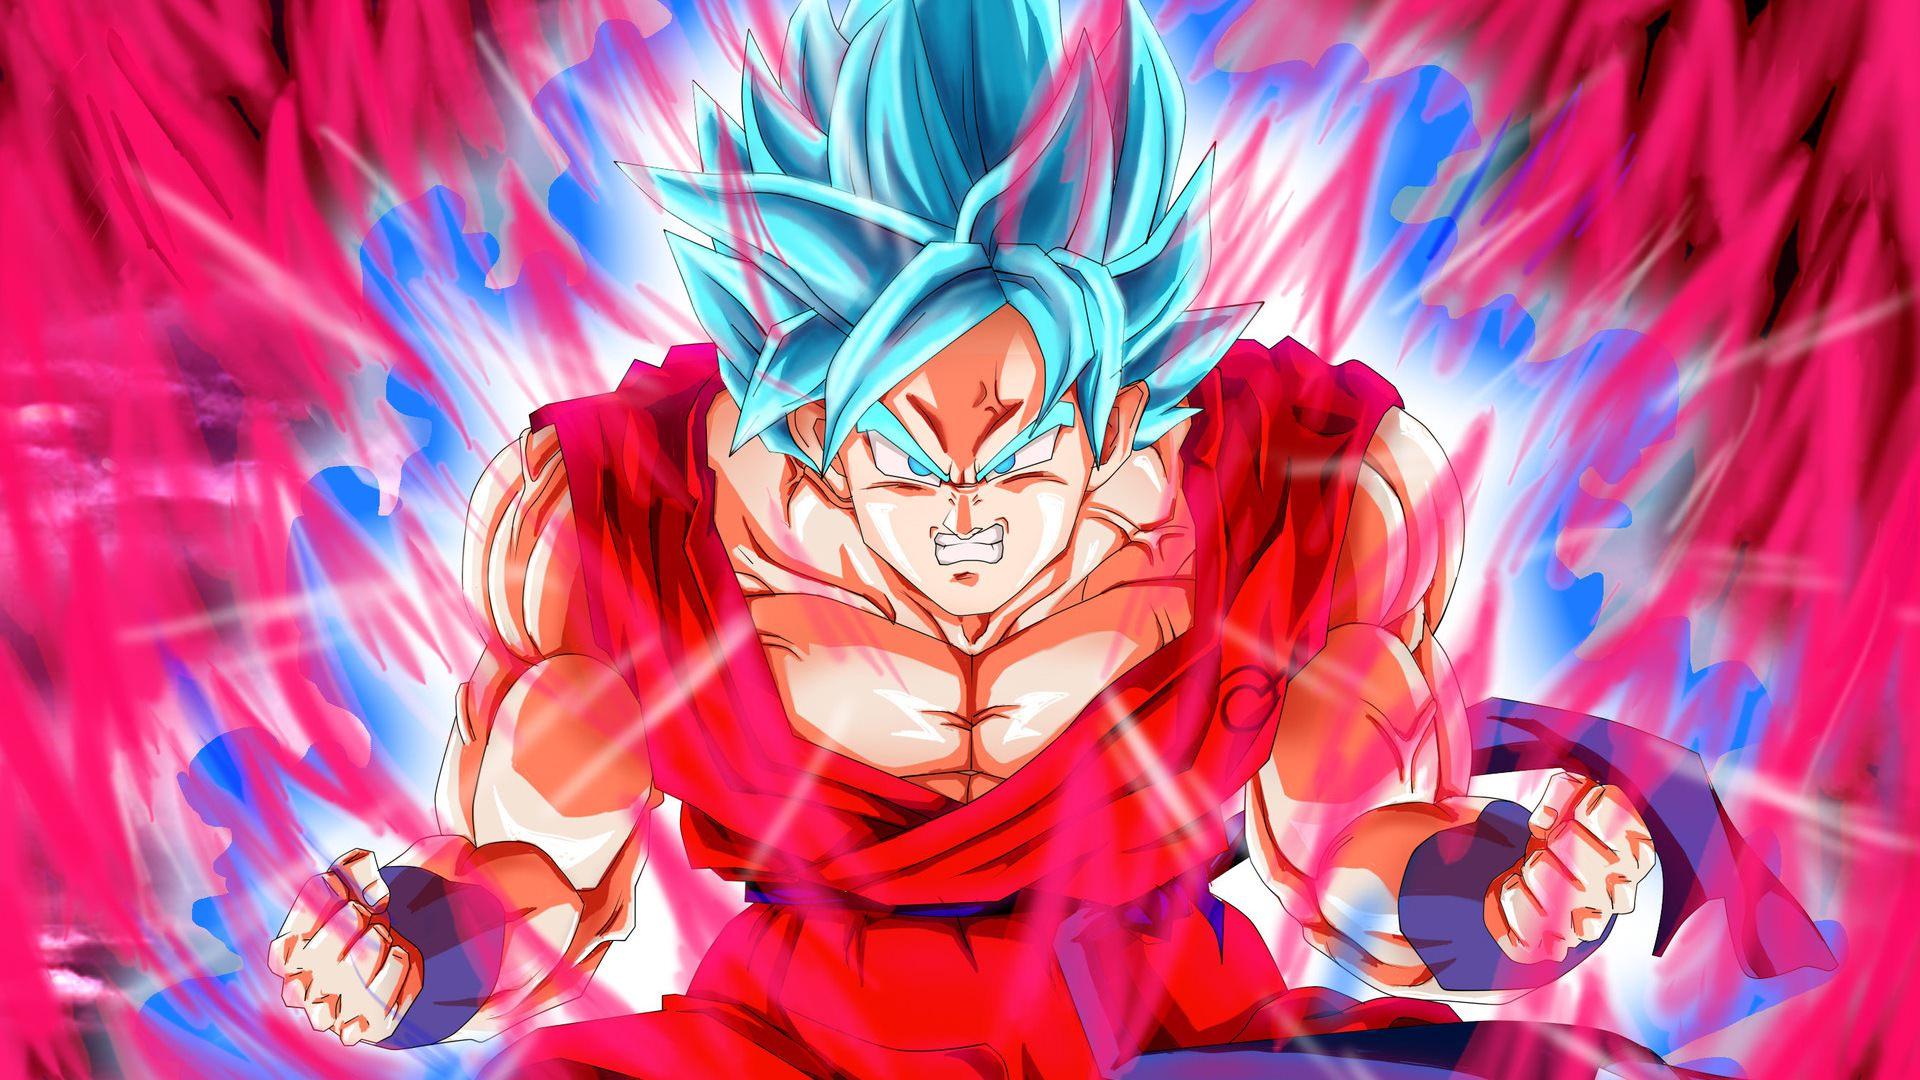 Blue Super Saiyan Goku Wallpaper Free Blue Super Saiyan